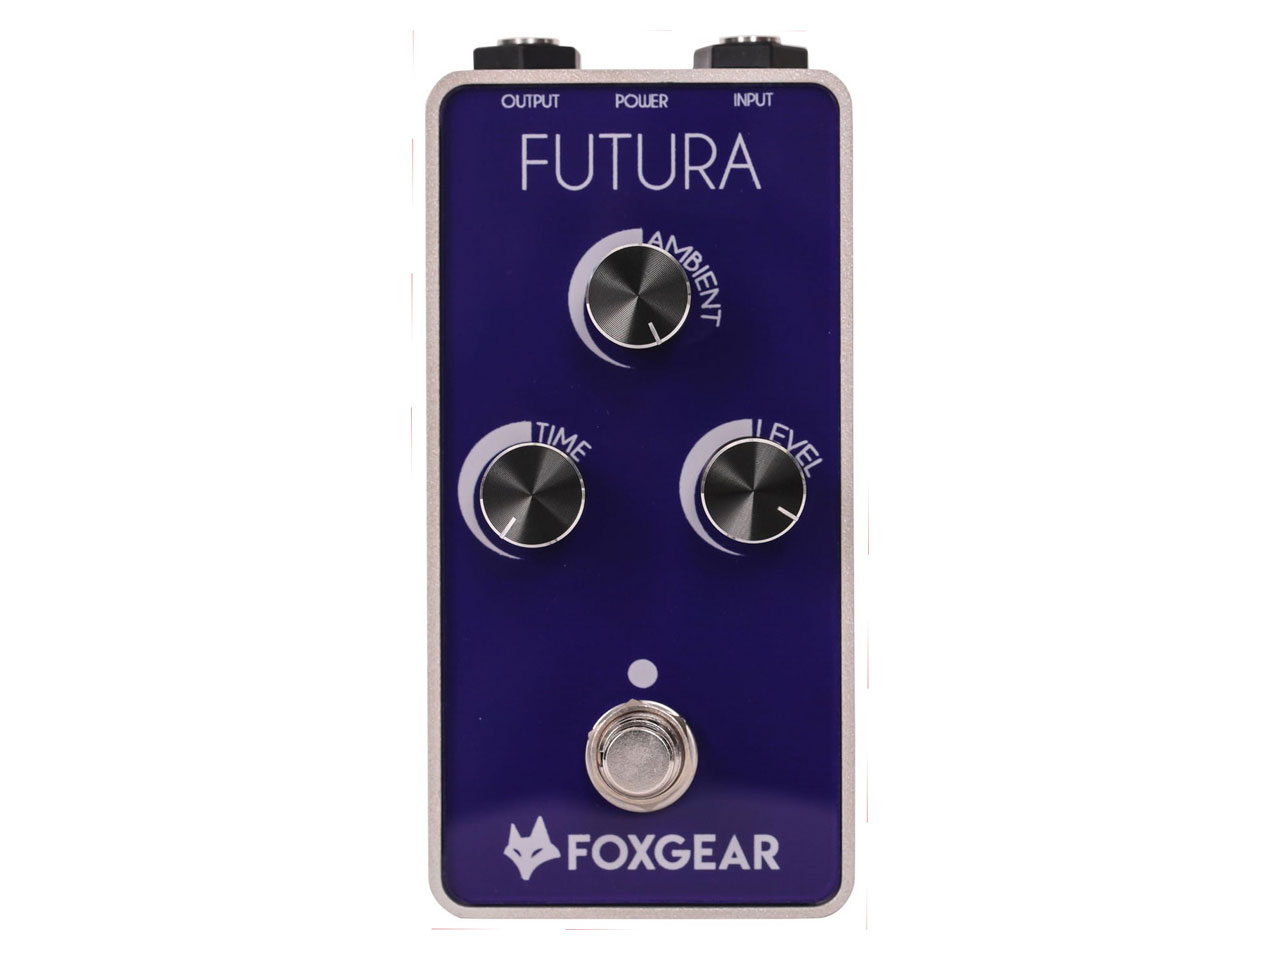 FOXGEAR(フォックスギア) Futura